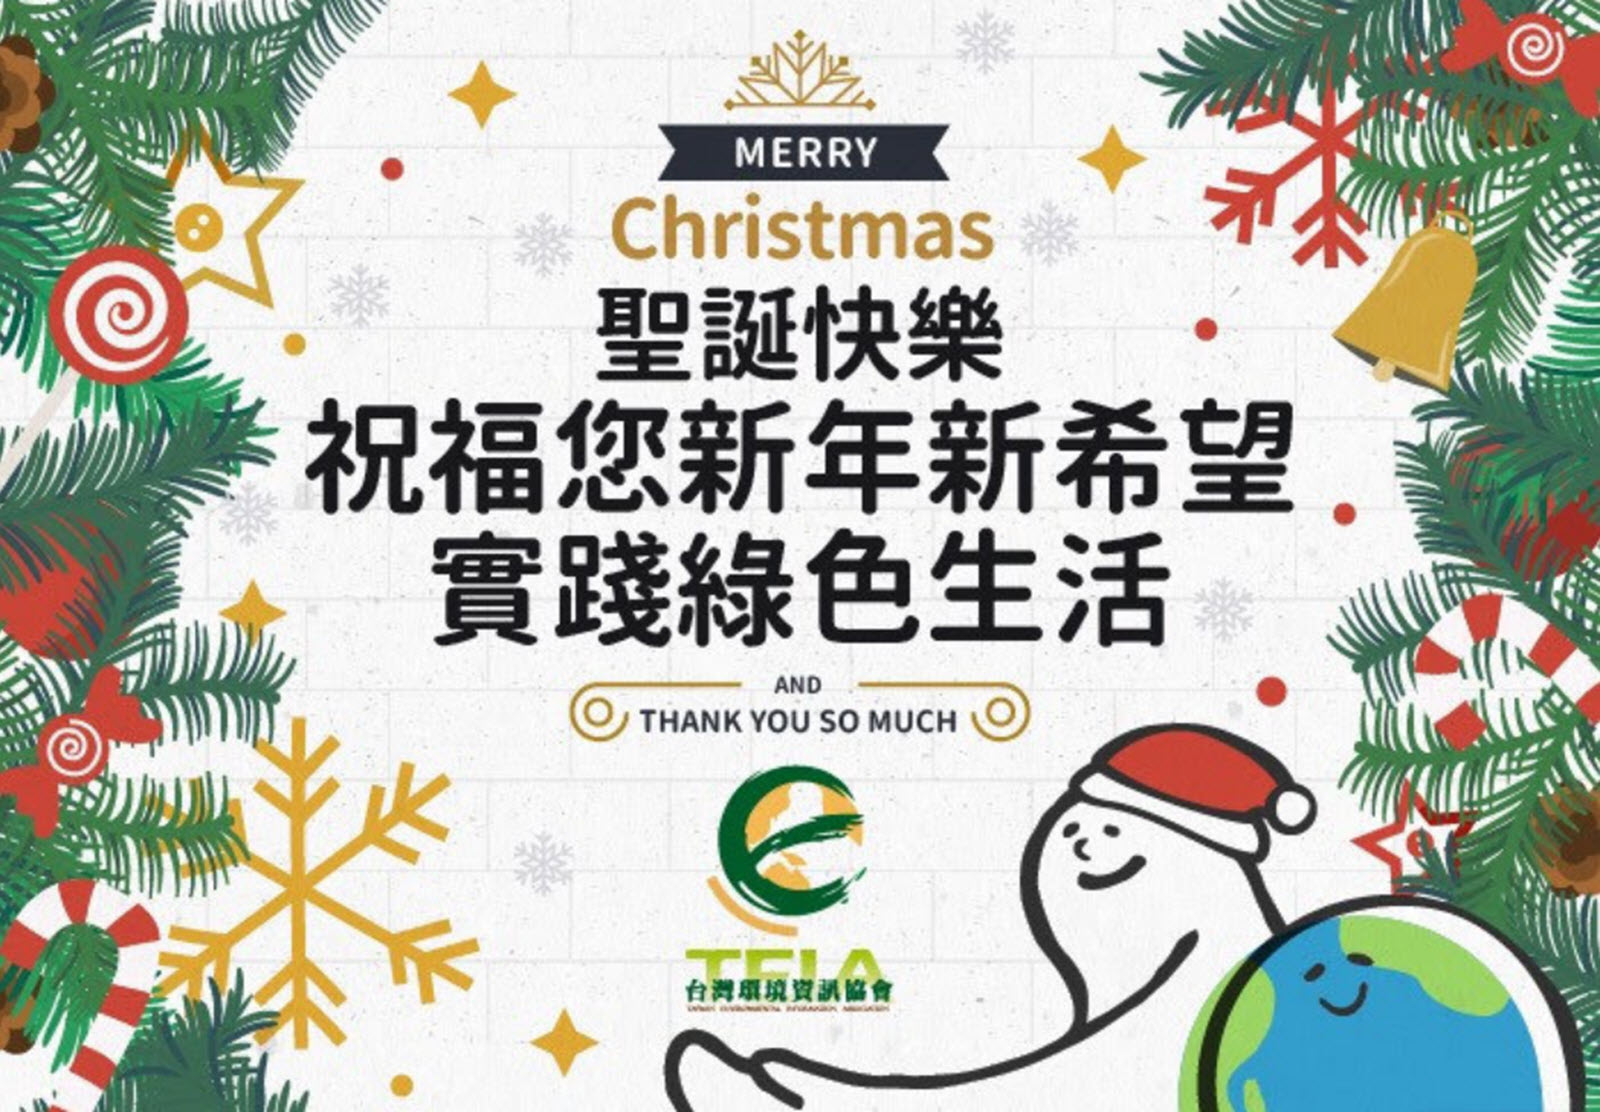 環境資訊-聖誕快樂-2017-12-24-綠色生活.jpg